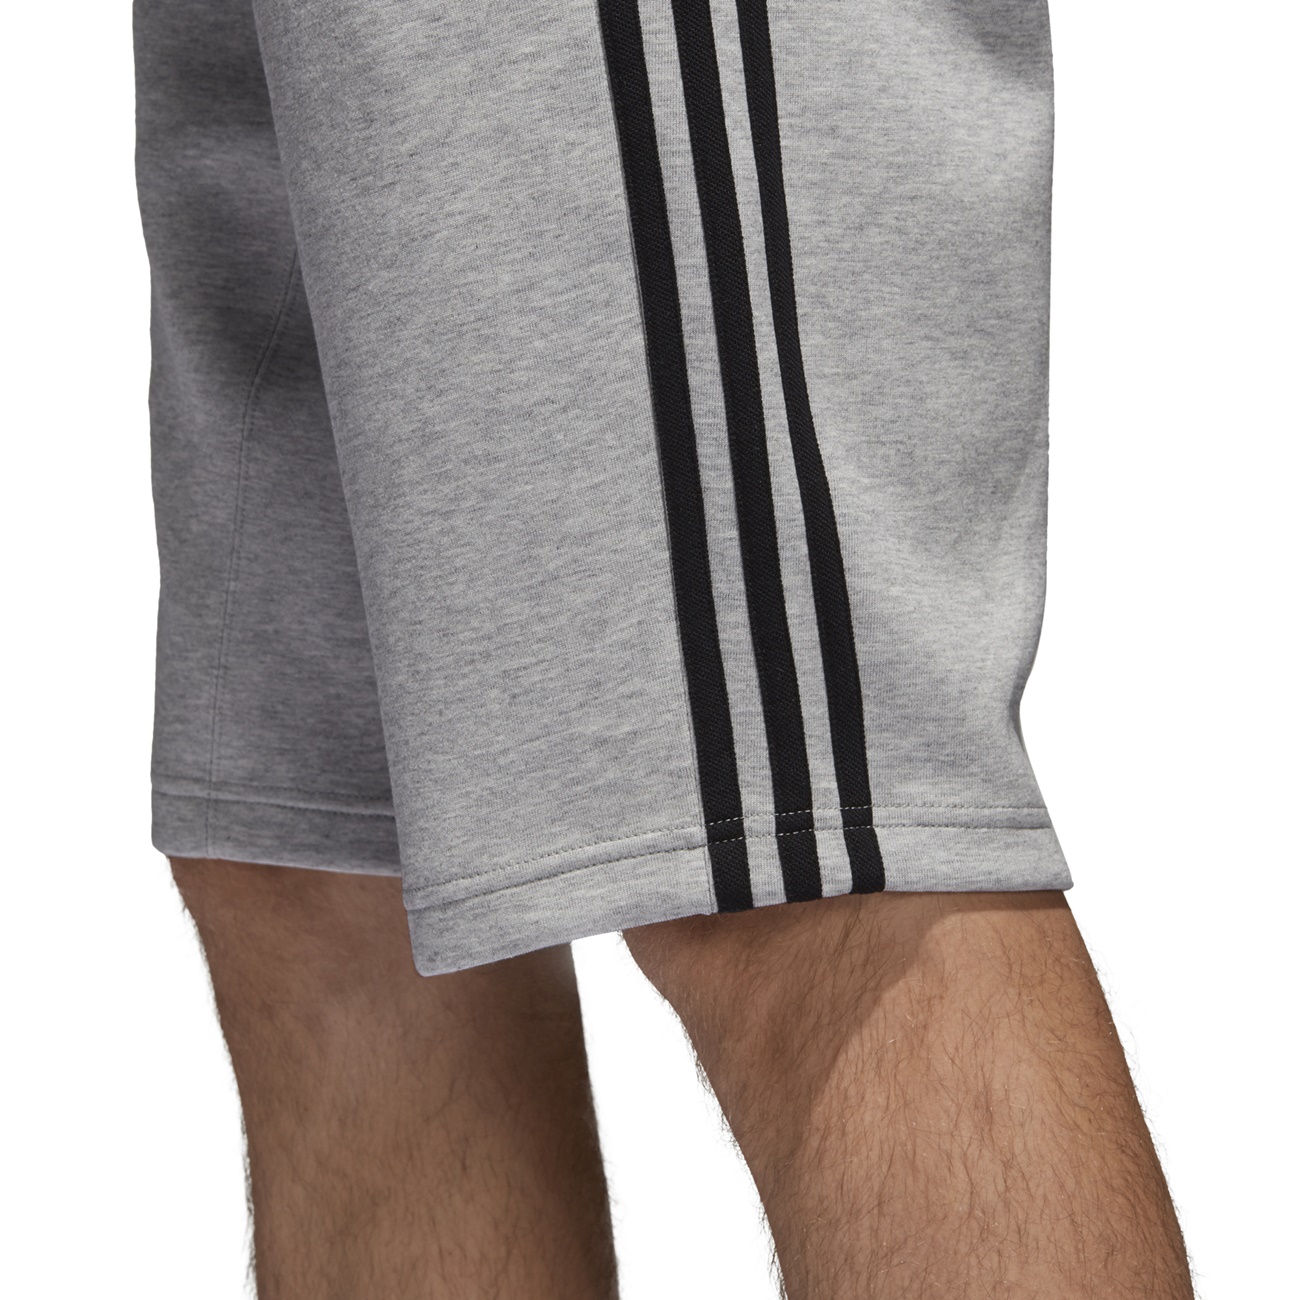 Adidas Originals Shorts Q2 (Medium